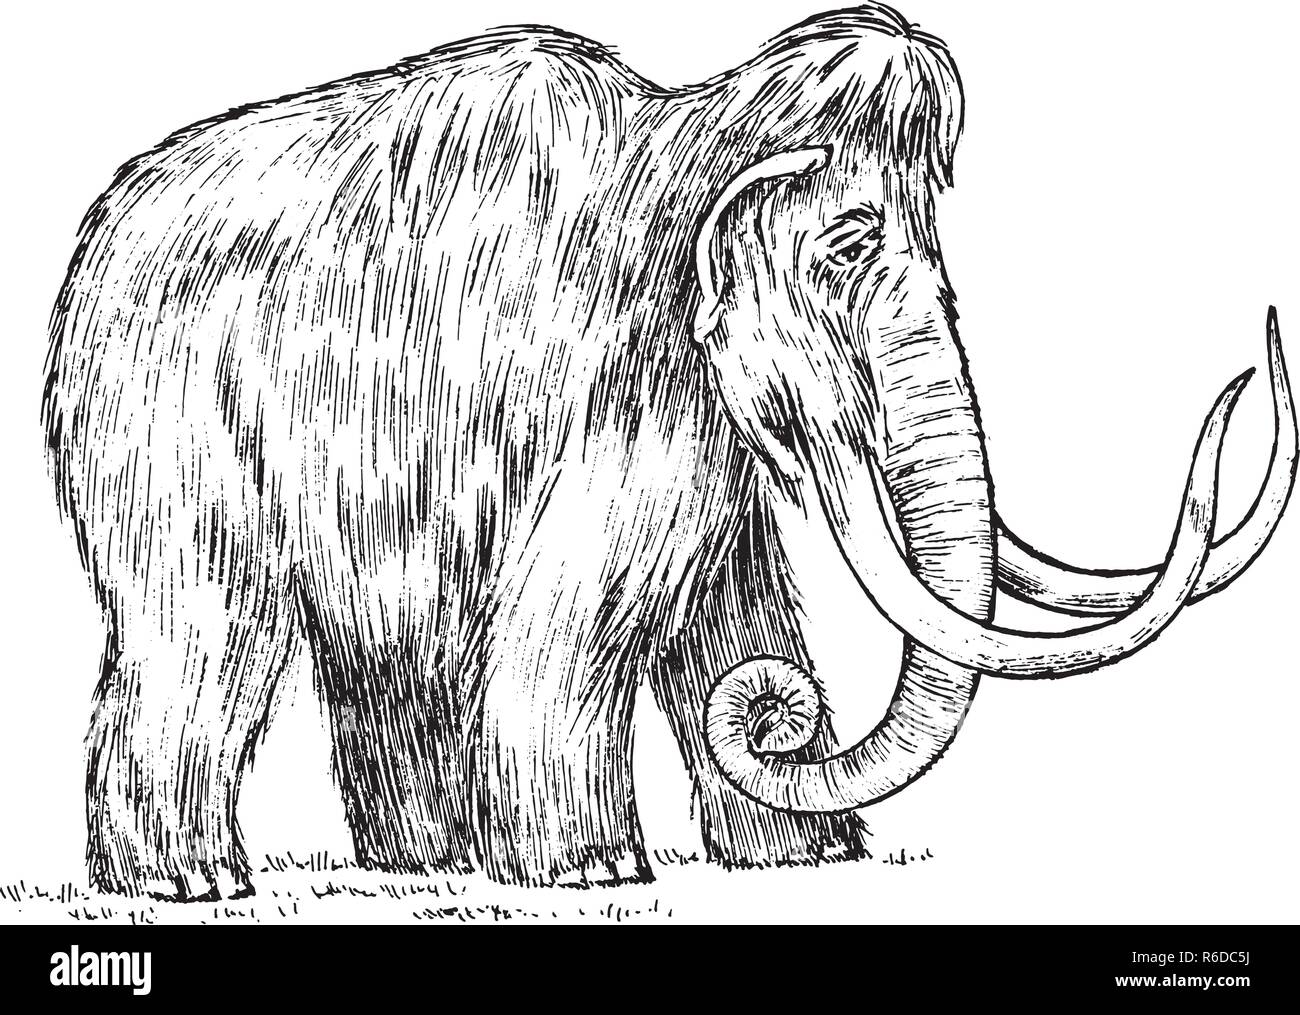 Große Mammut. Ausgestorbene Tier. Vorfahren der Elefanten. Vintage Style. Graviert hand gezeichnete Skizze. Vector Illustration Stock Vektor